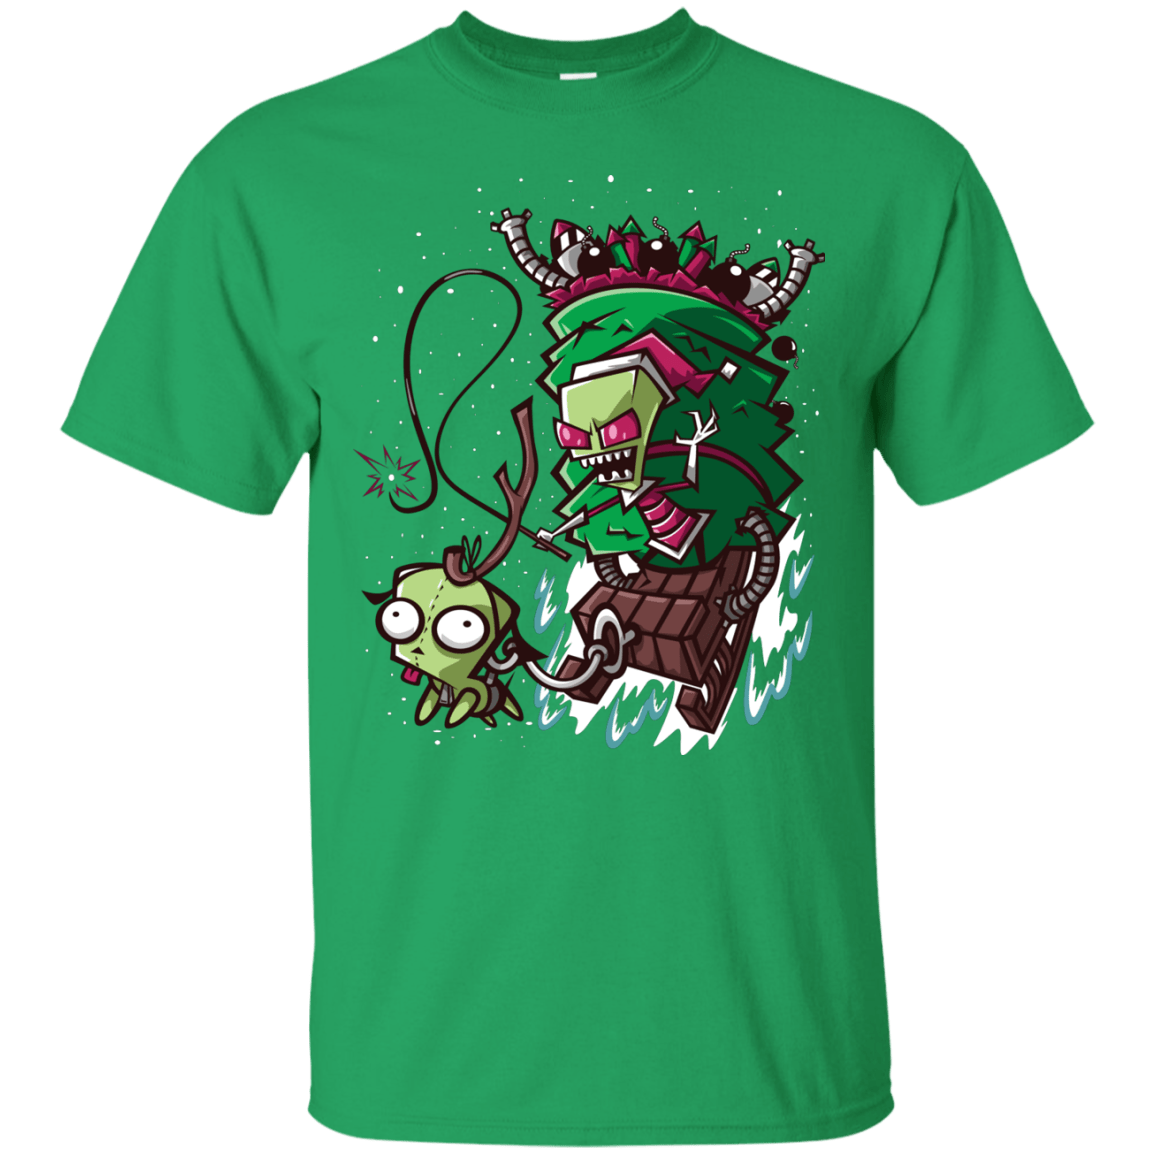 T-Shirts Irish Green / Small Zim Stole Christmas T-Shirt